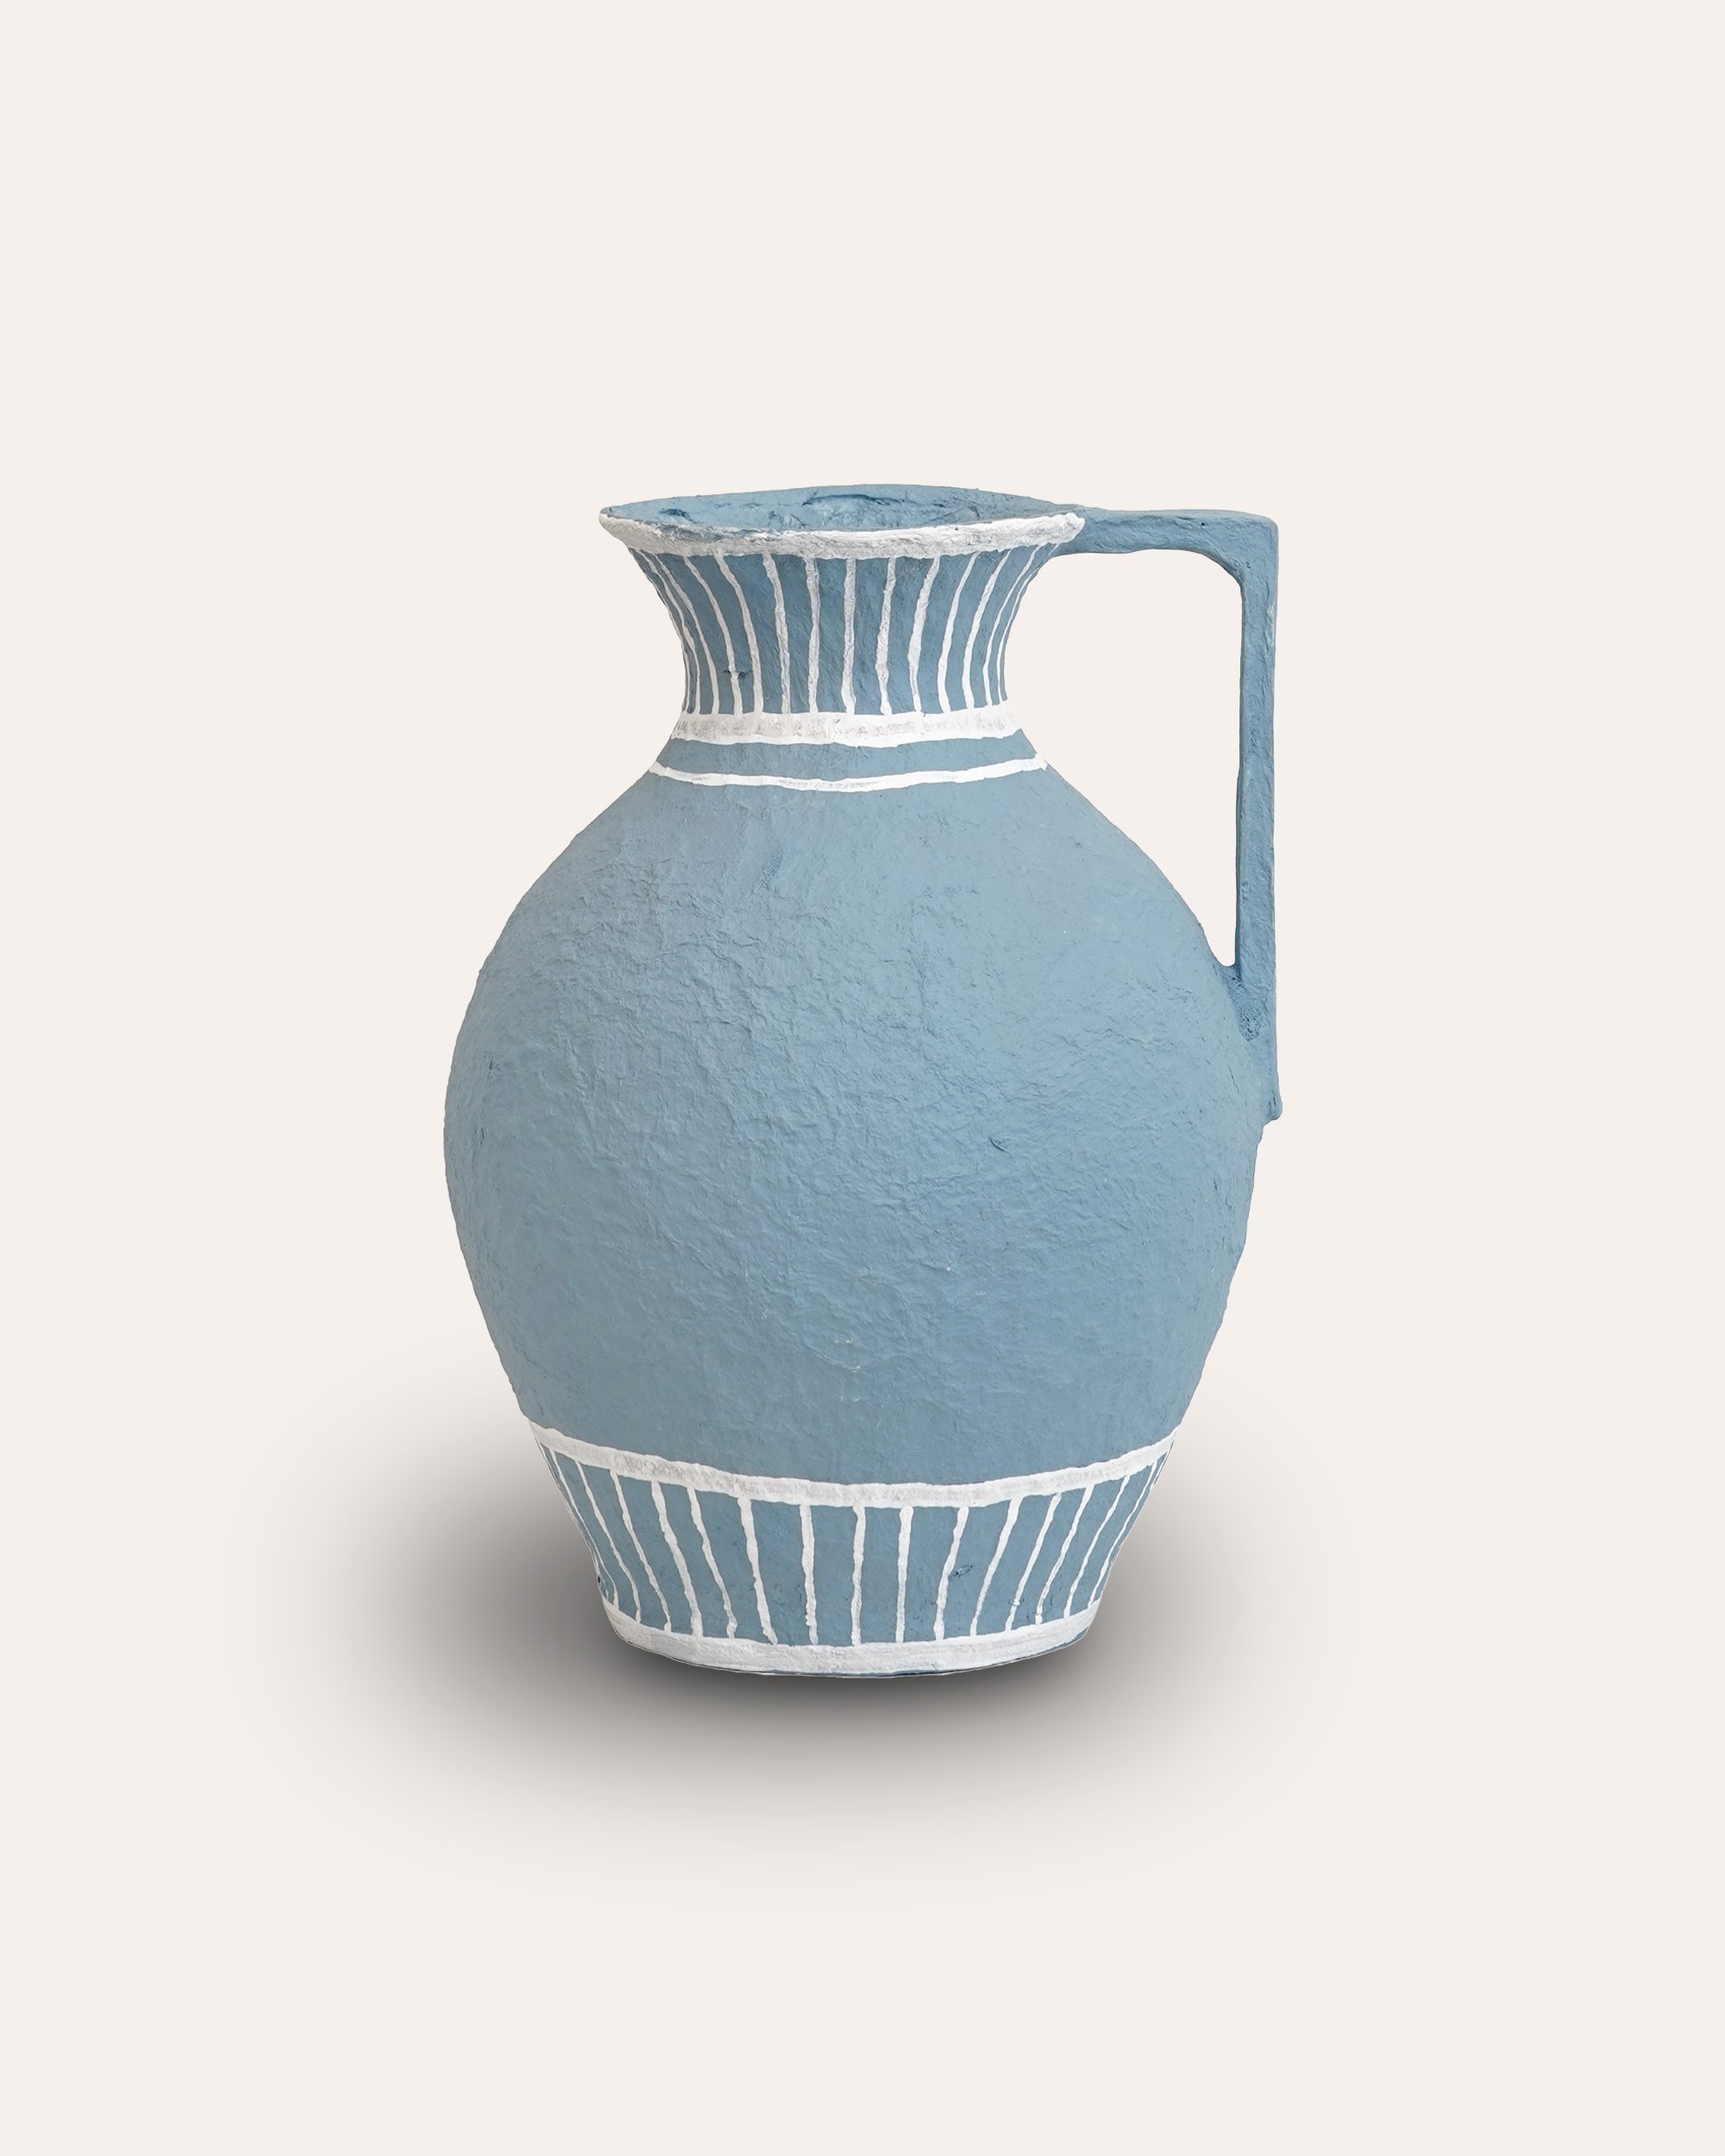 Pentola Cotton Maché Vase - Large Blue